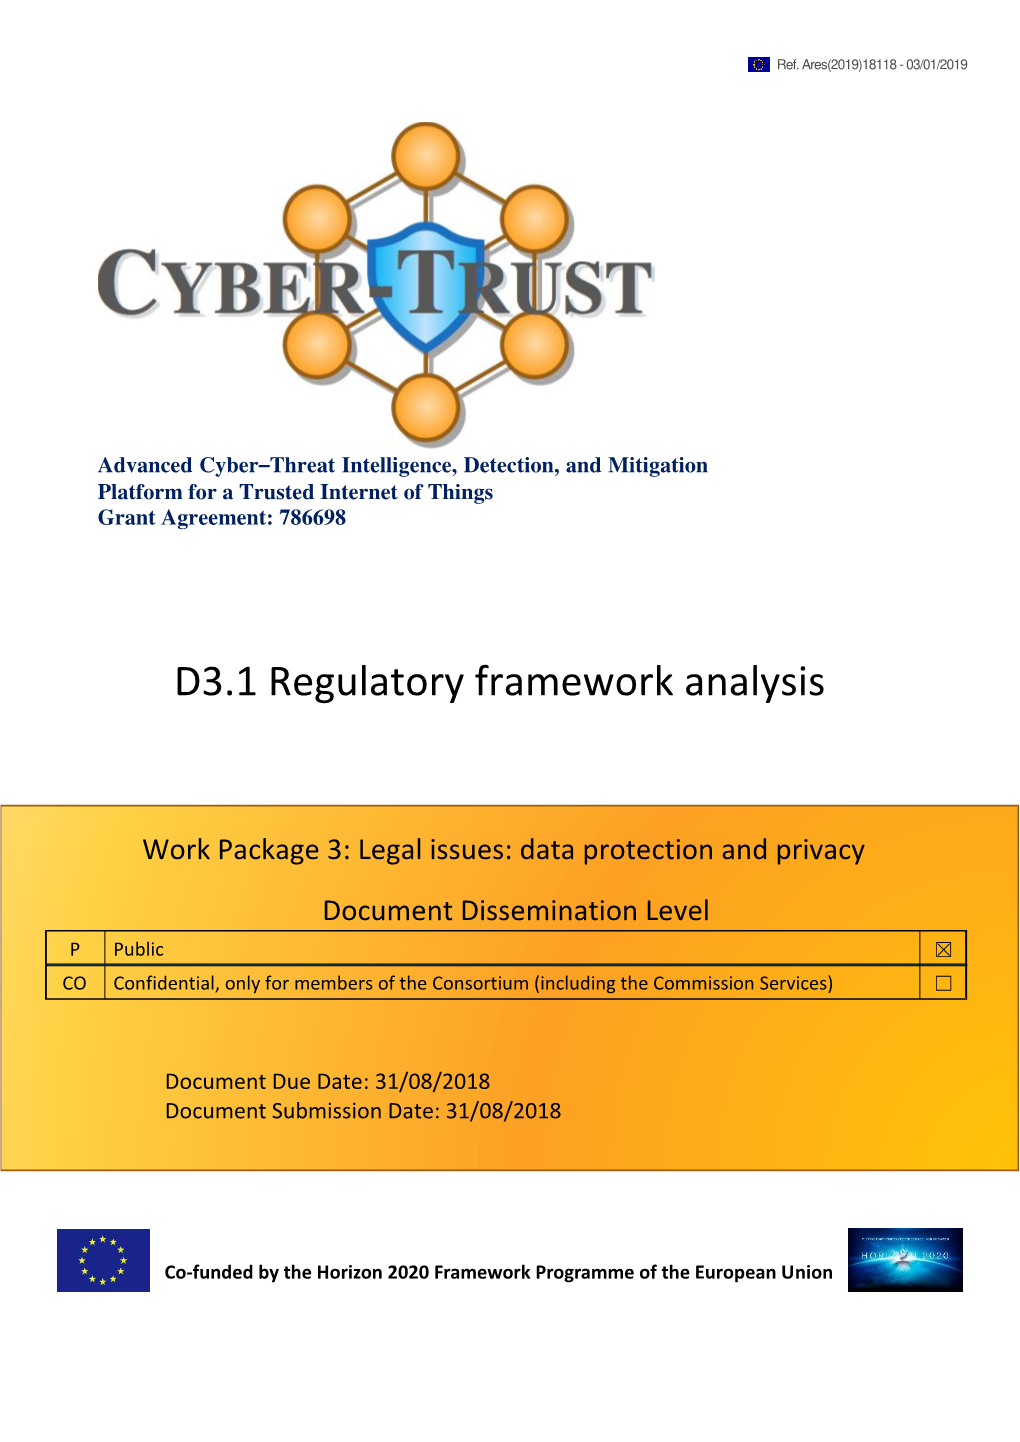 D3.1 Regulatory Framework Analysis